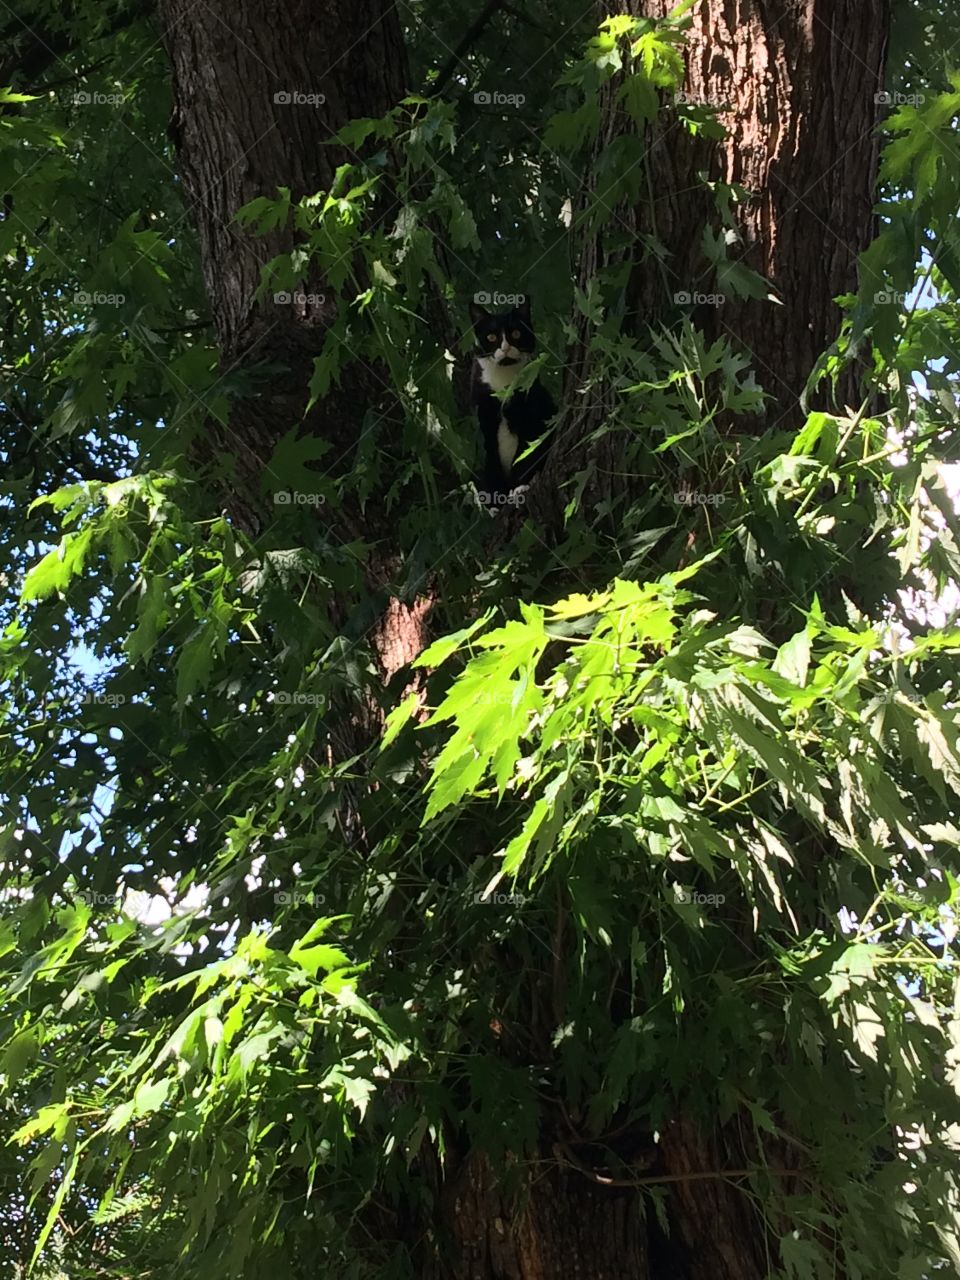 Lu cat in a tree